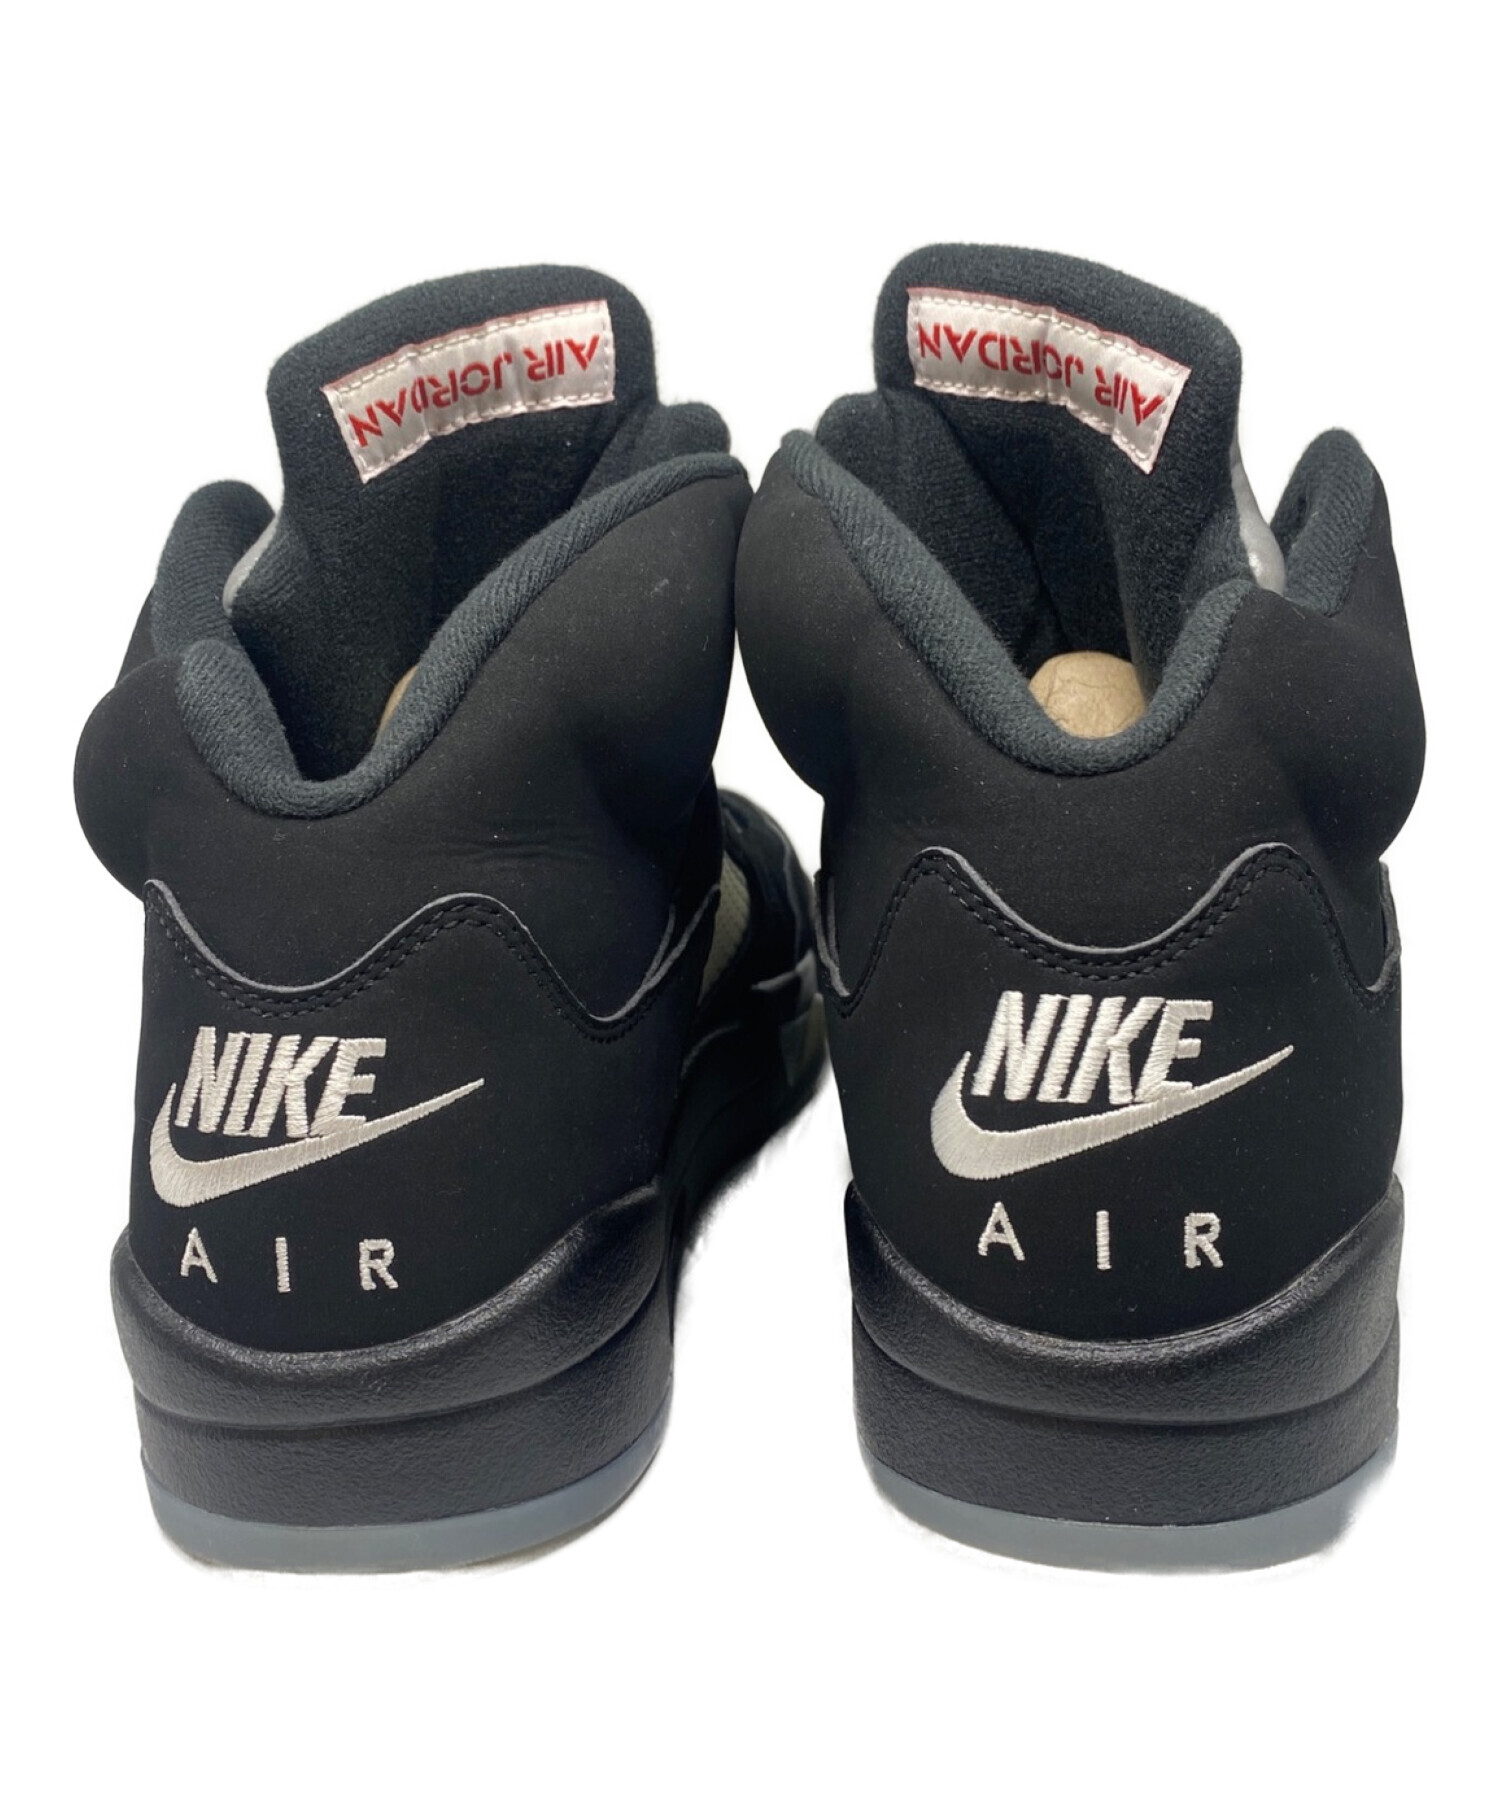 NIKE (ナイキ) Nike Air Jordan 5 Retro OG エアジョーダン 5 ブラック サイズ:27.5